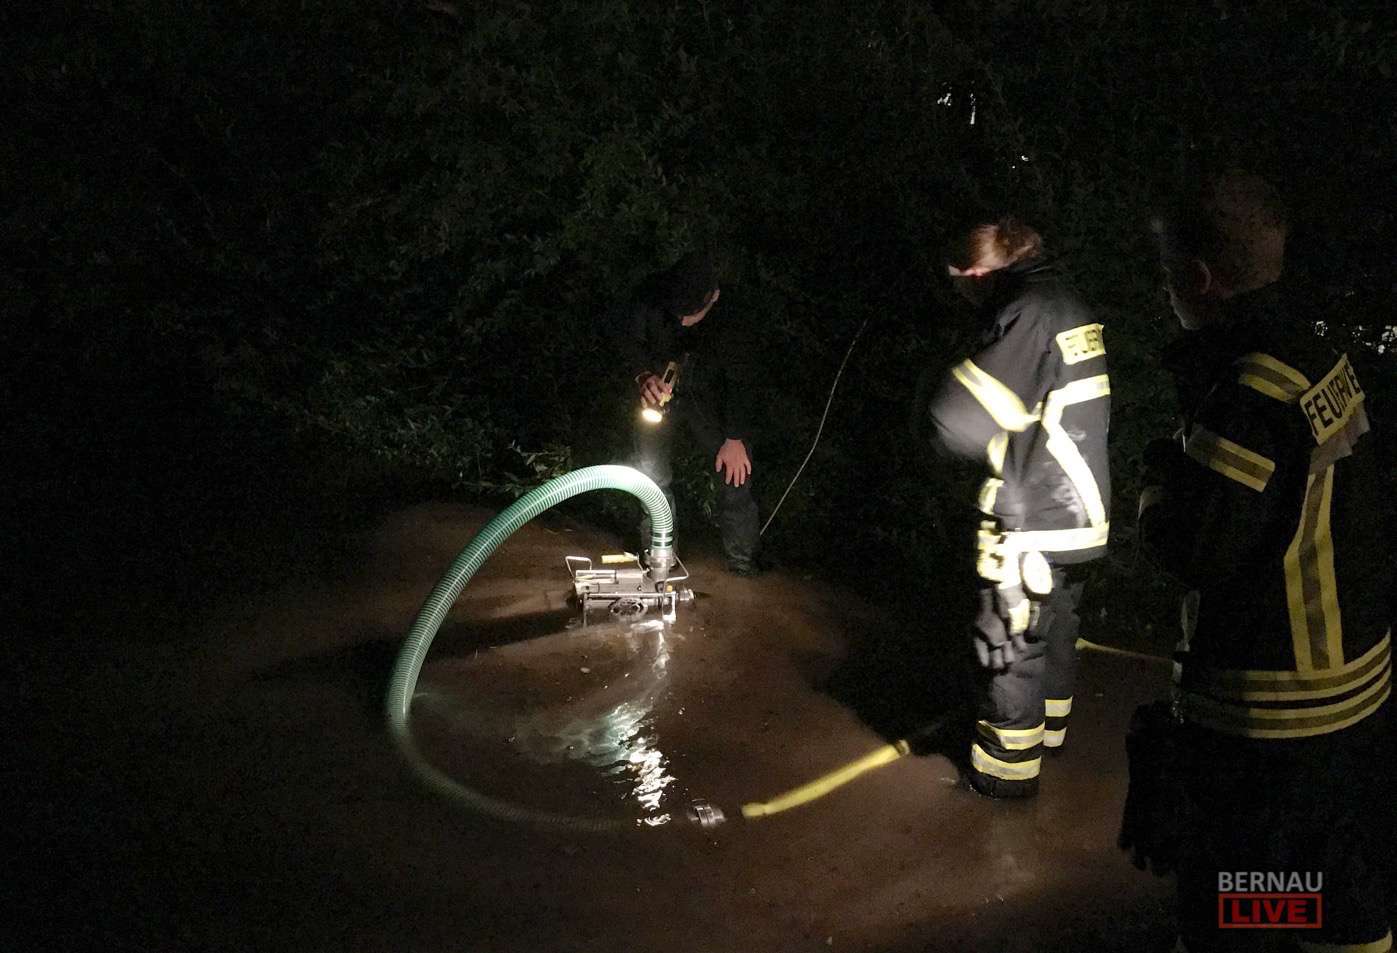 Feuerwehr Bernau 16 Stunden im (Regen) Dauereinsatz - Danke!